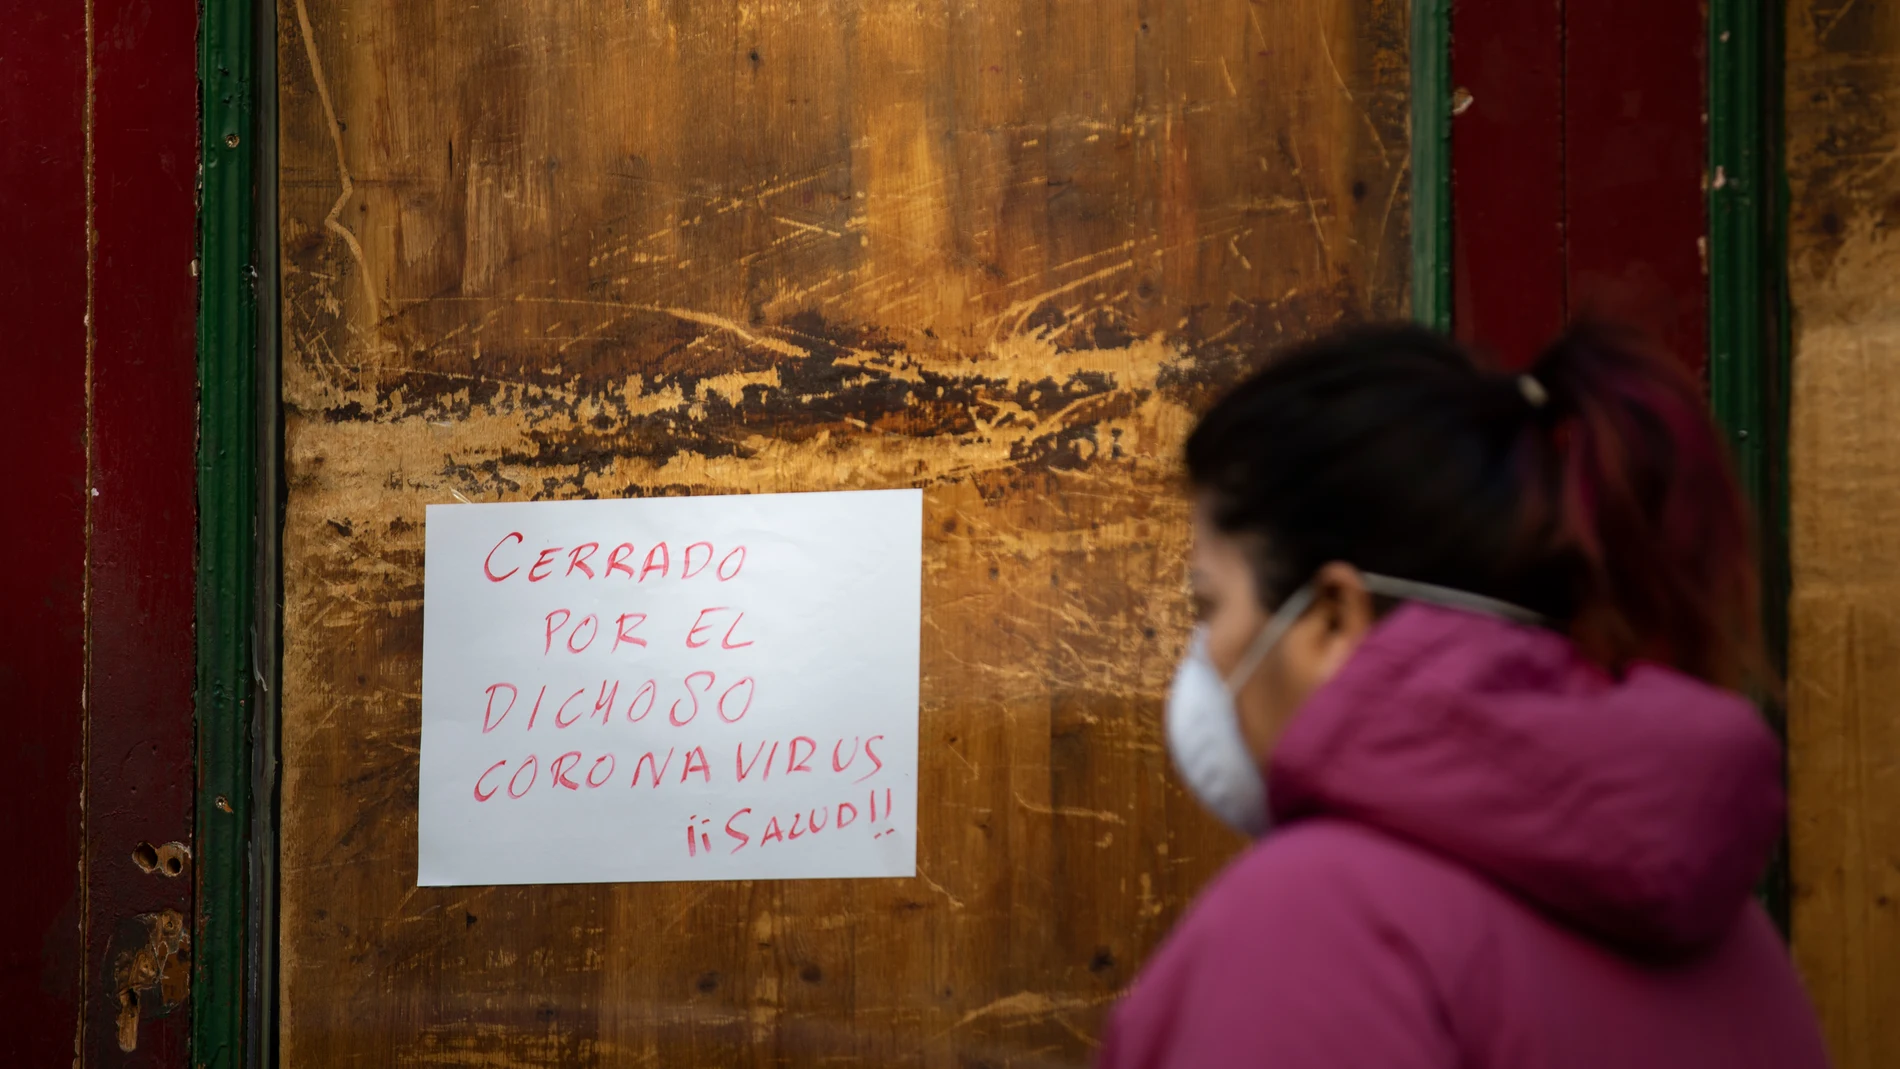 Imágen de una mujer pasando por delante de un cartel en un comercio que reza: "Cerrado por el dichoso coronavirus".